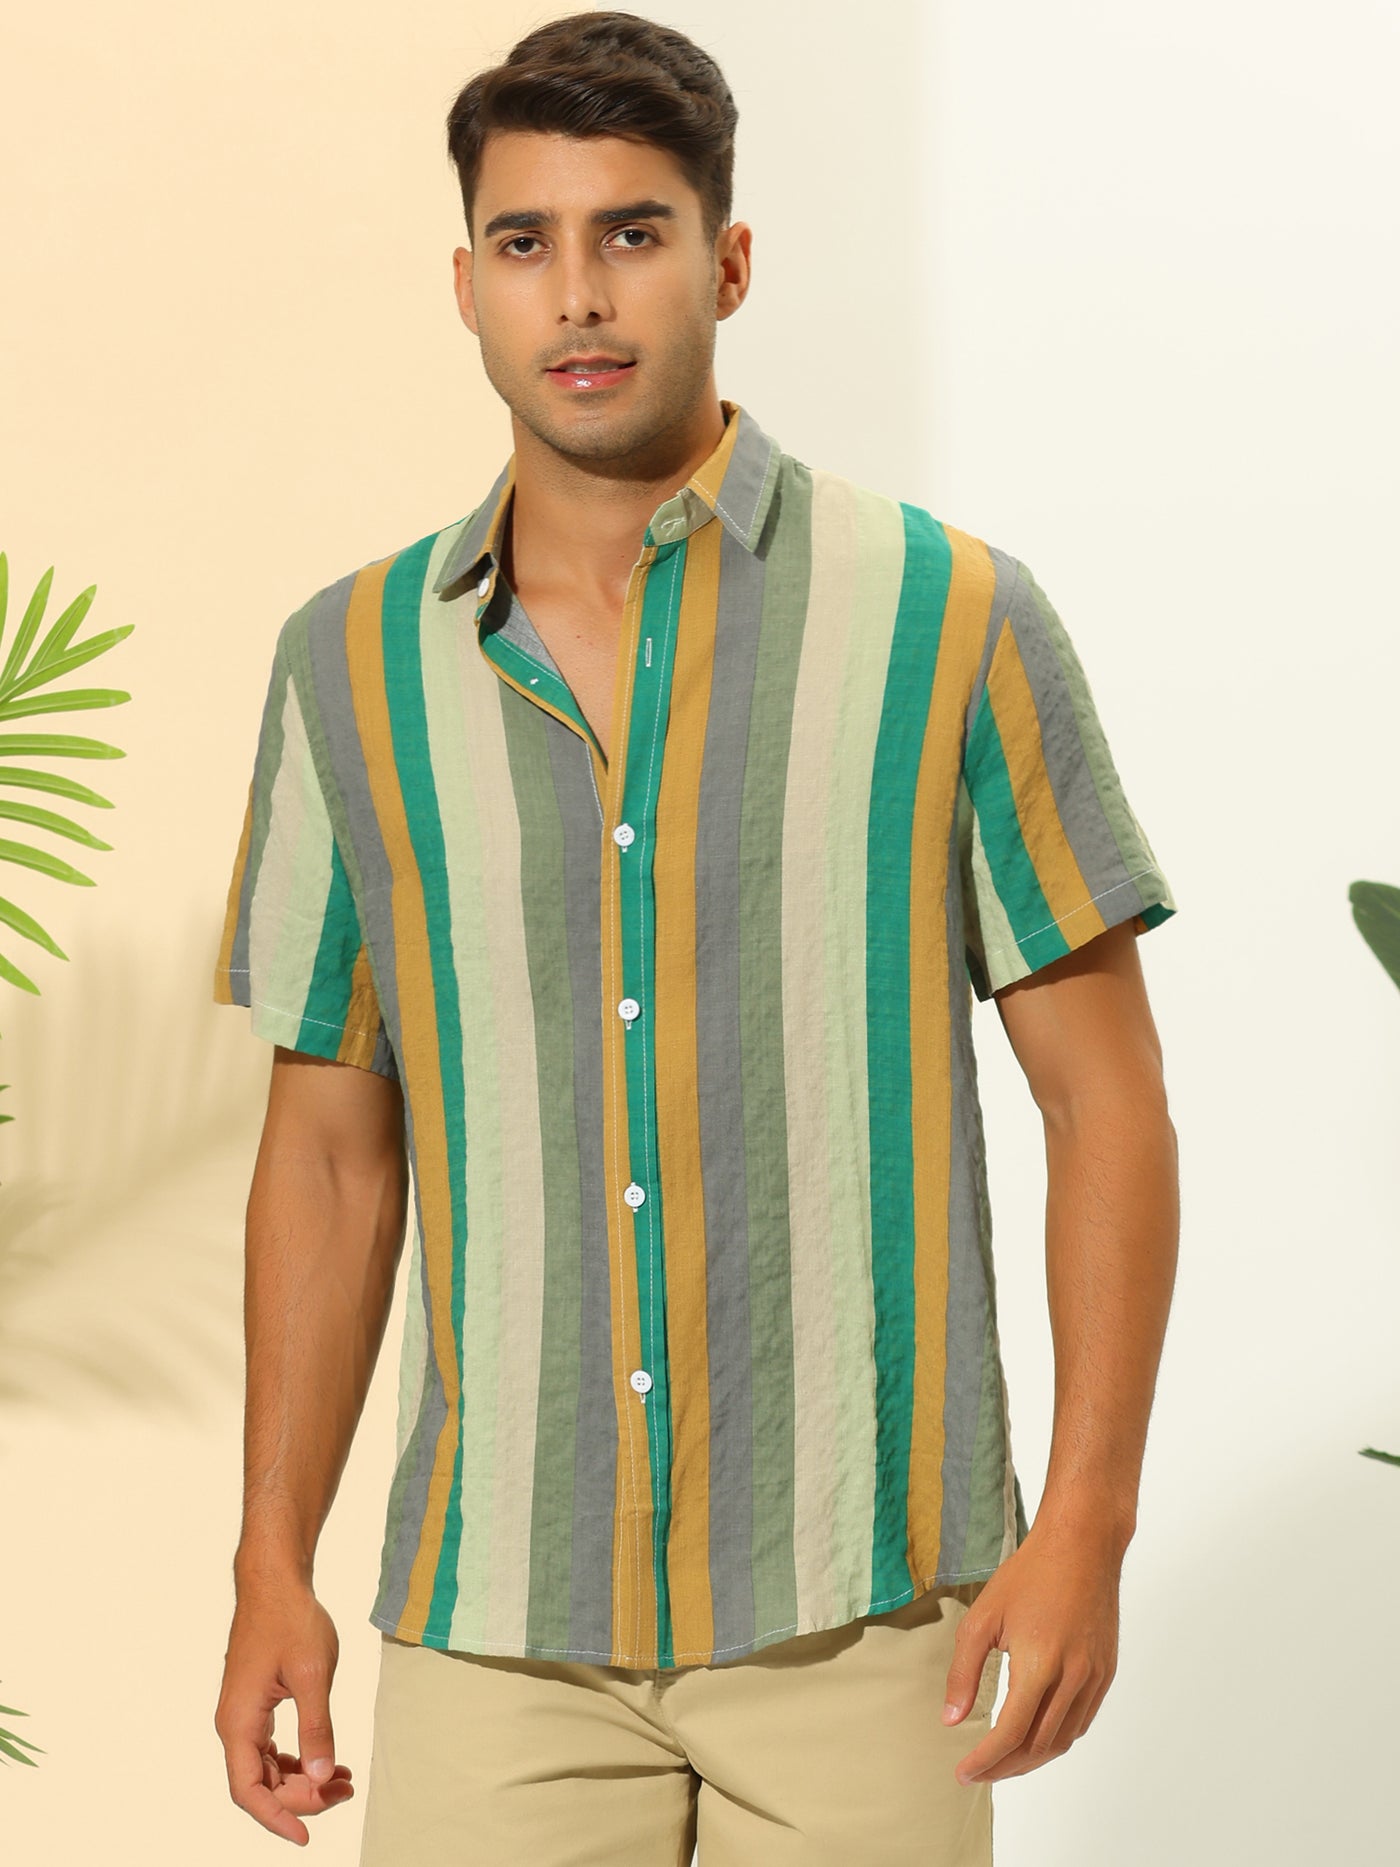 Bublédon Vertical Striped Shirts for Men's Summer Hawaiian Short Sleeves Button Down Shirt